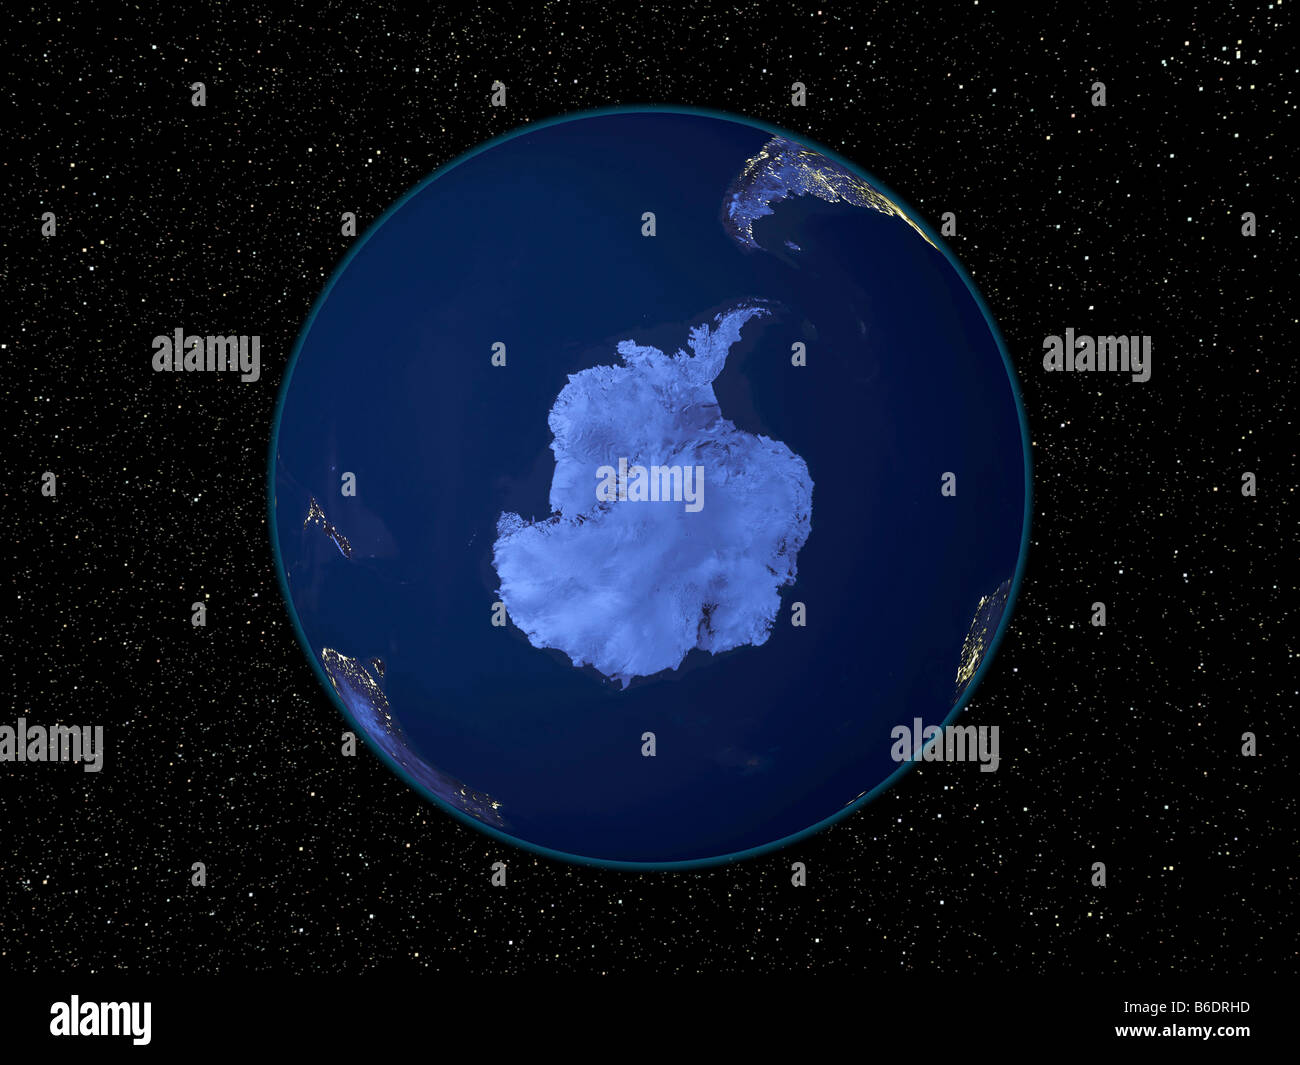 Antartide durante la notte. Immagine satellitare della terra di notte, impostata su uno sfondo di stelle, centrato sull'Antartide. Foto Stock